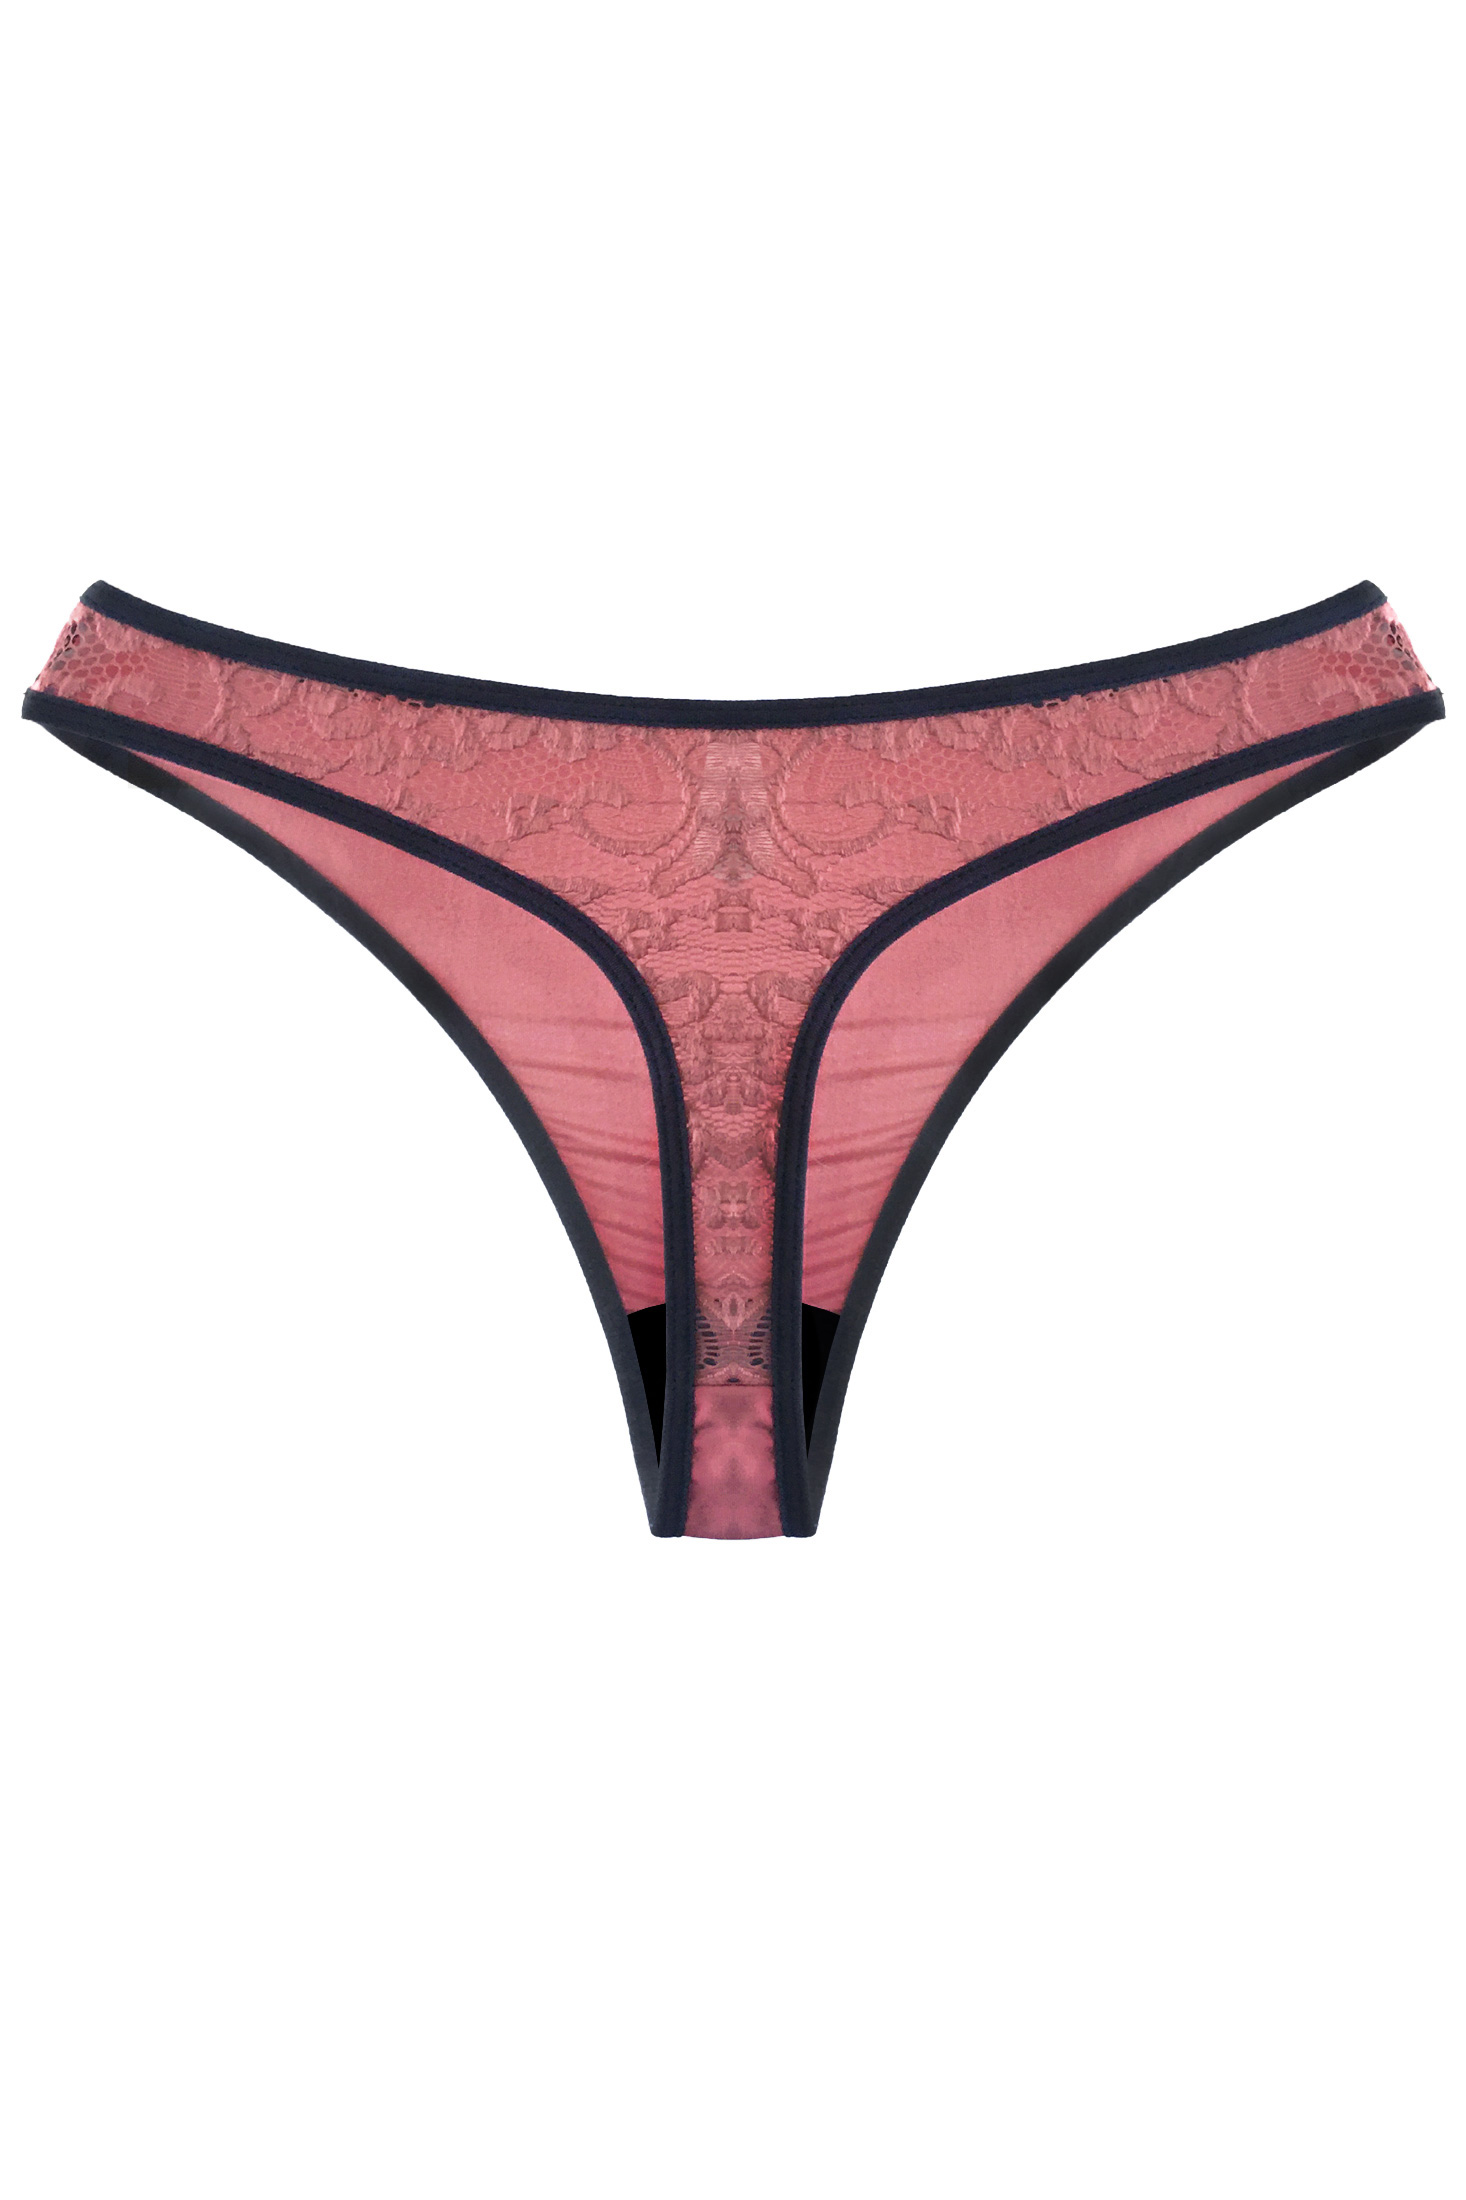 Lingerie Letters Sorbet Thong - Women's Underwear Online